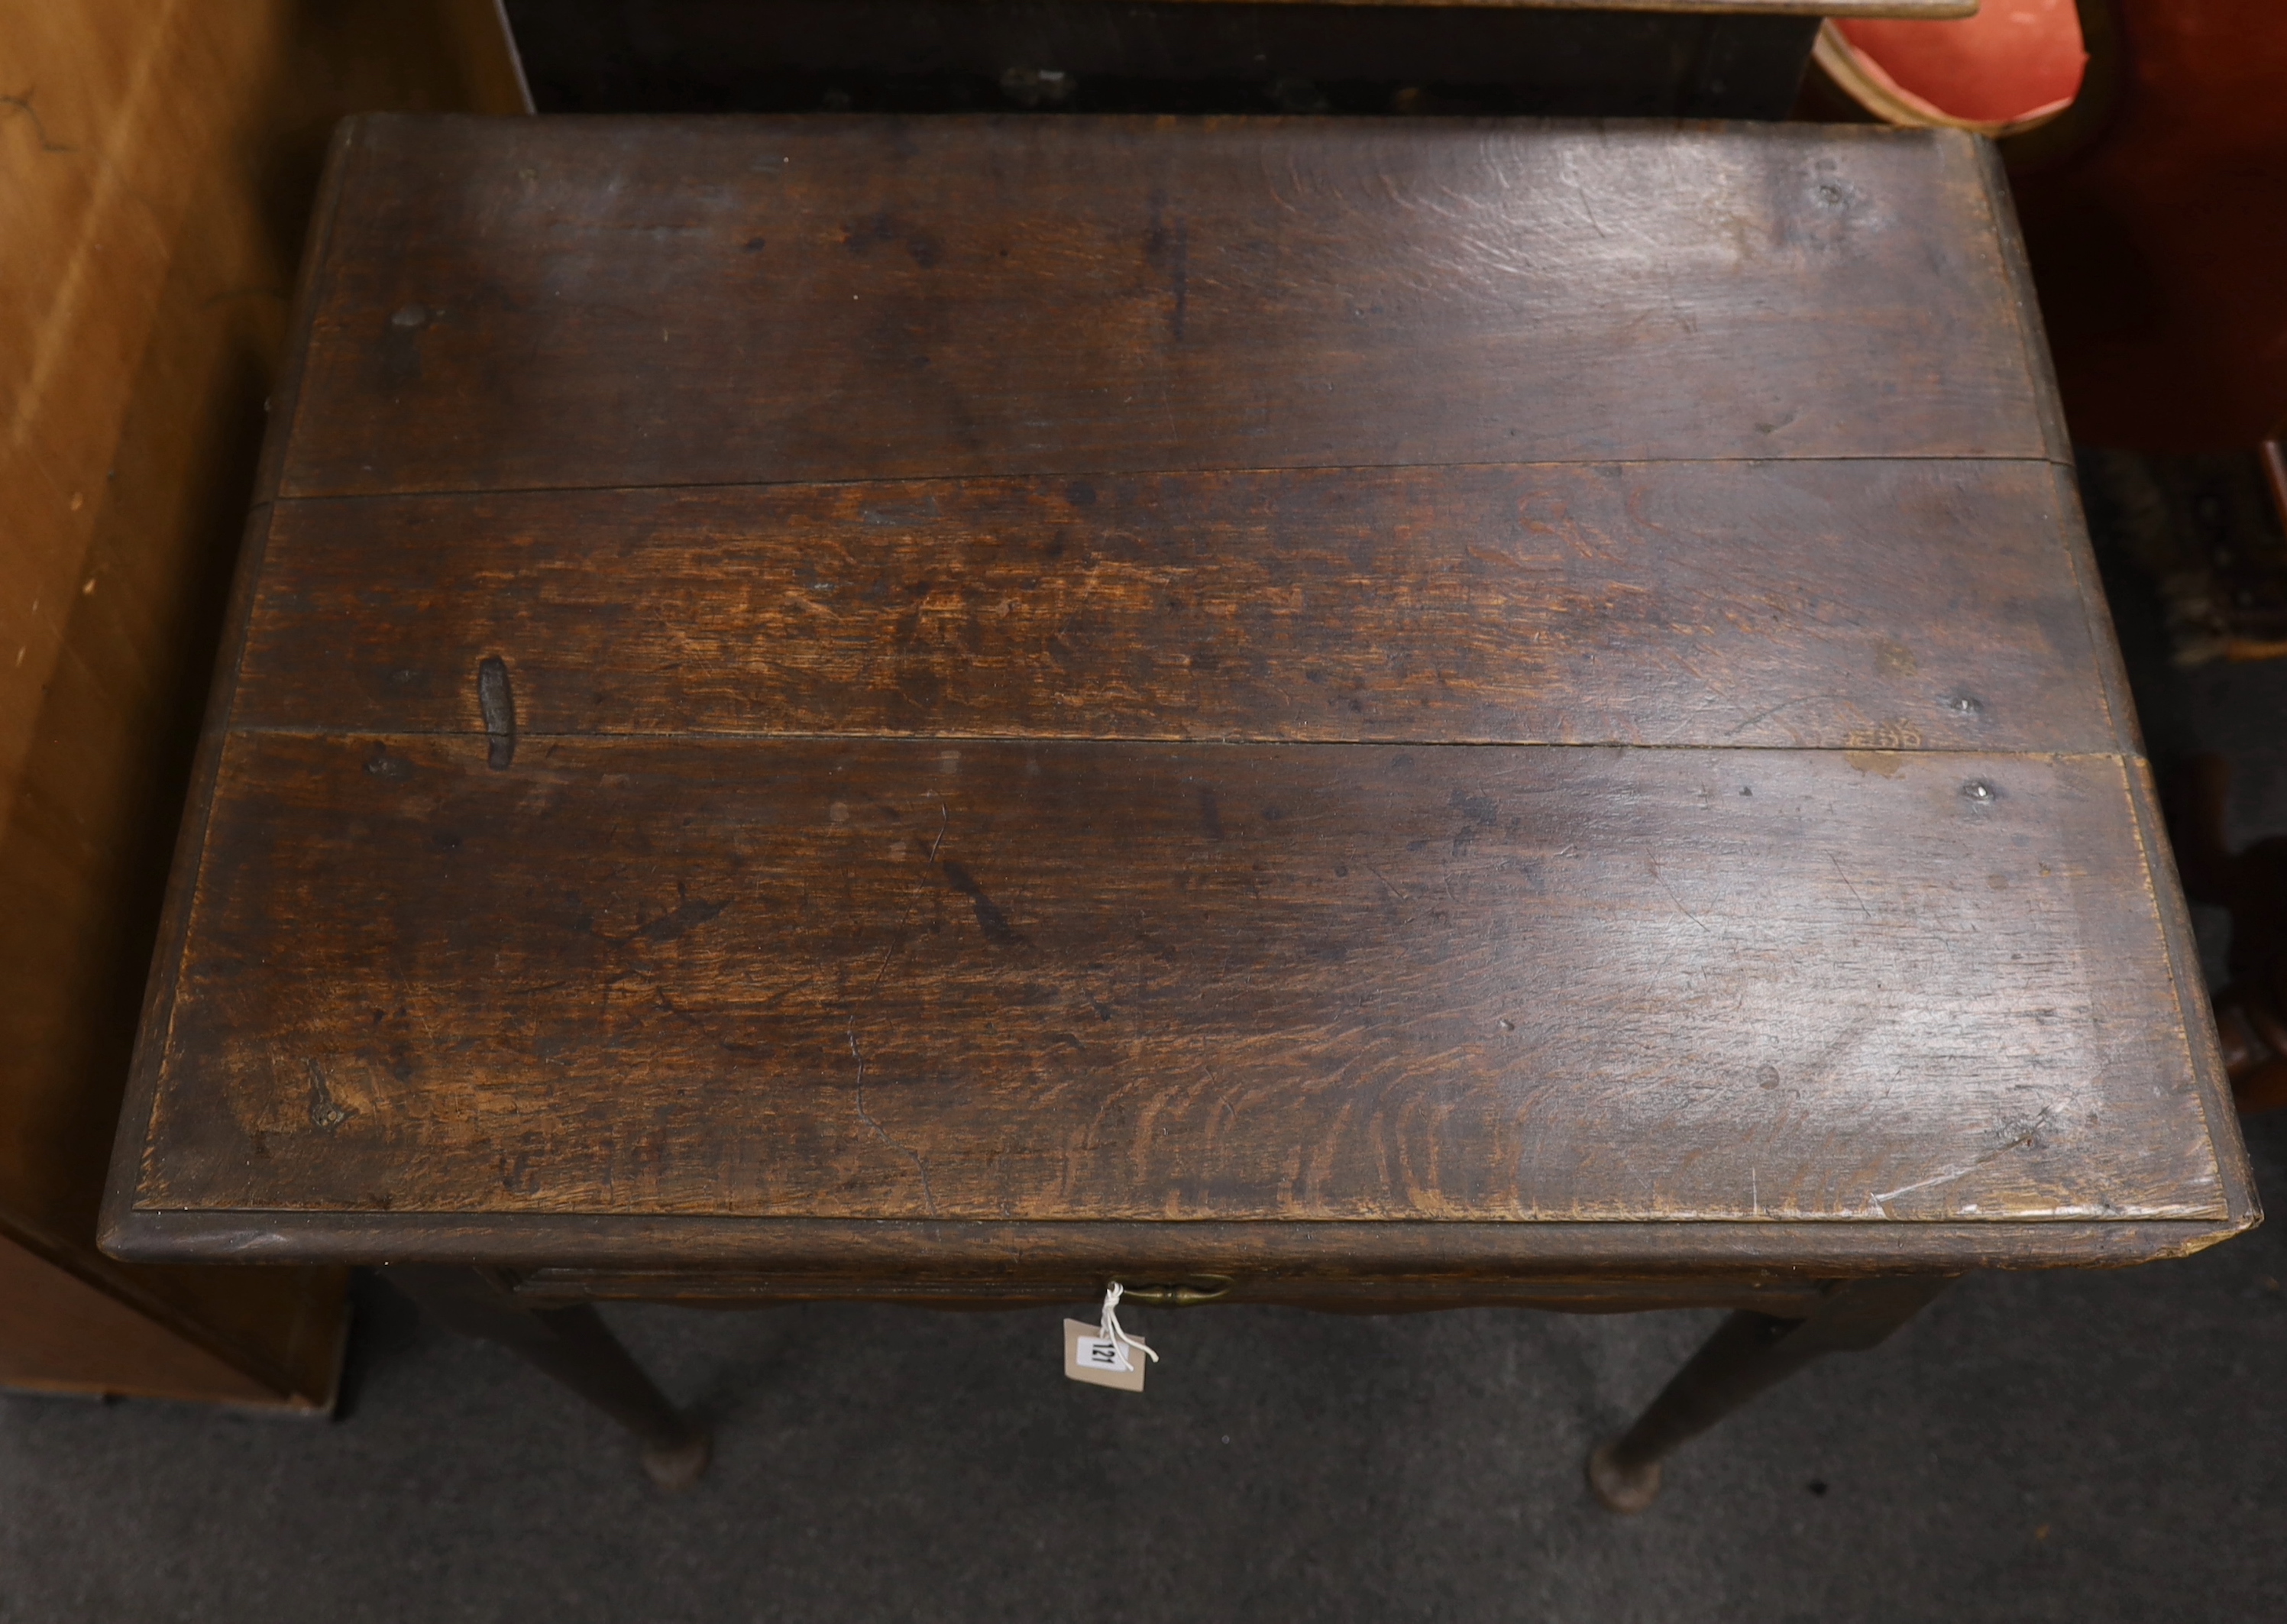 An 18th century oak side table, width 76cm, depth 52cm, height 66cm